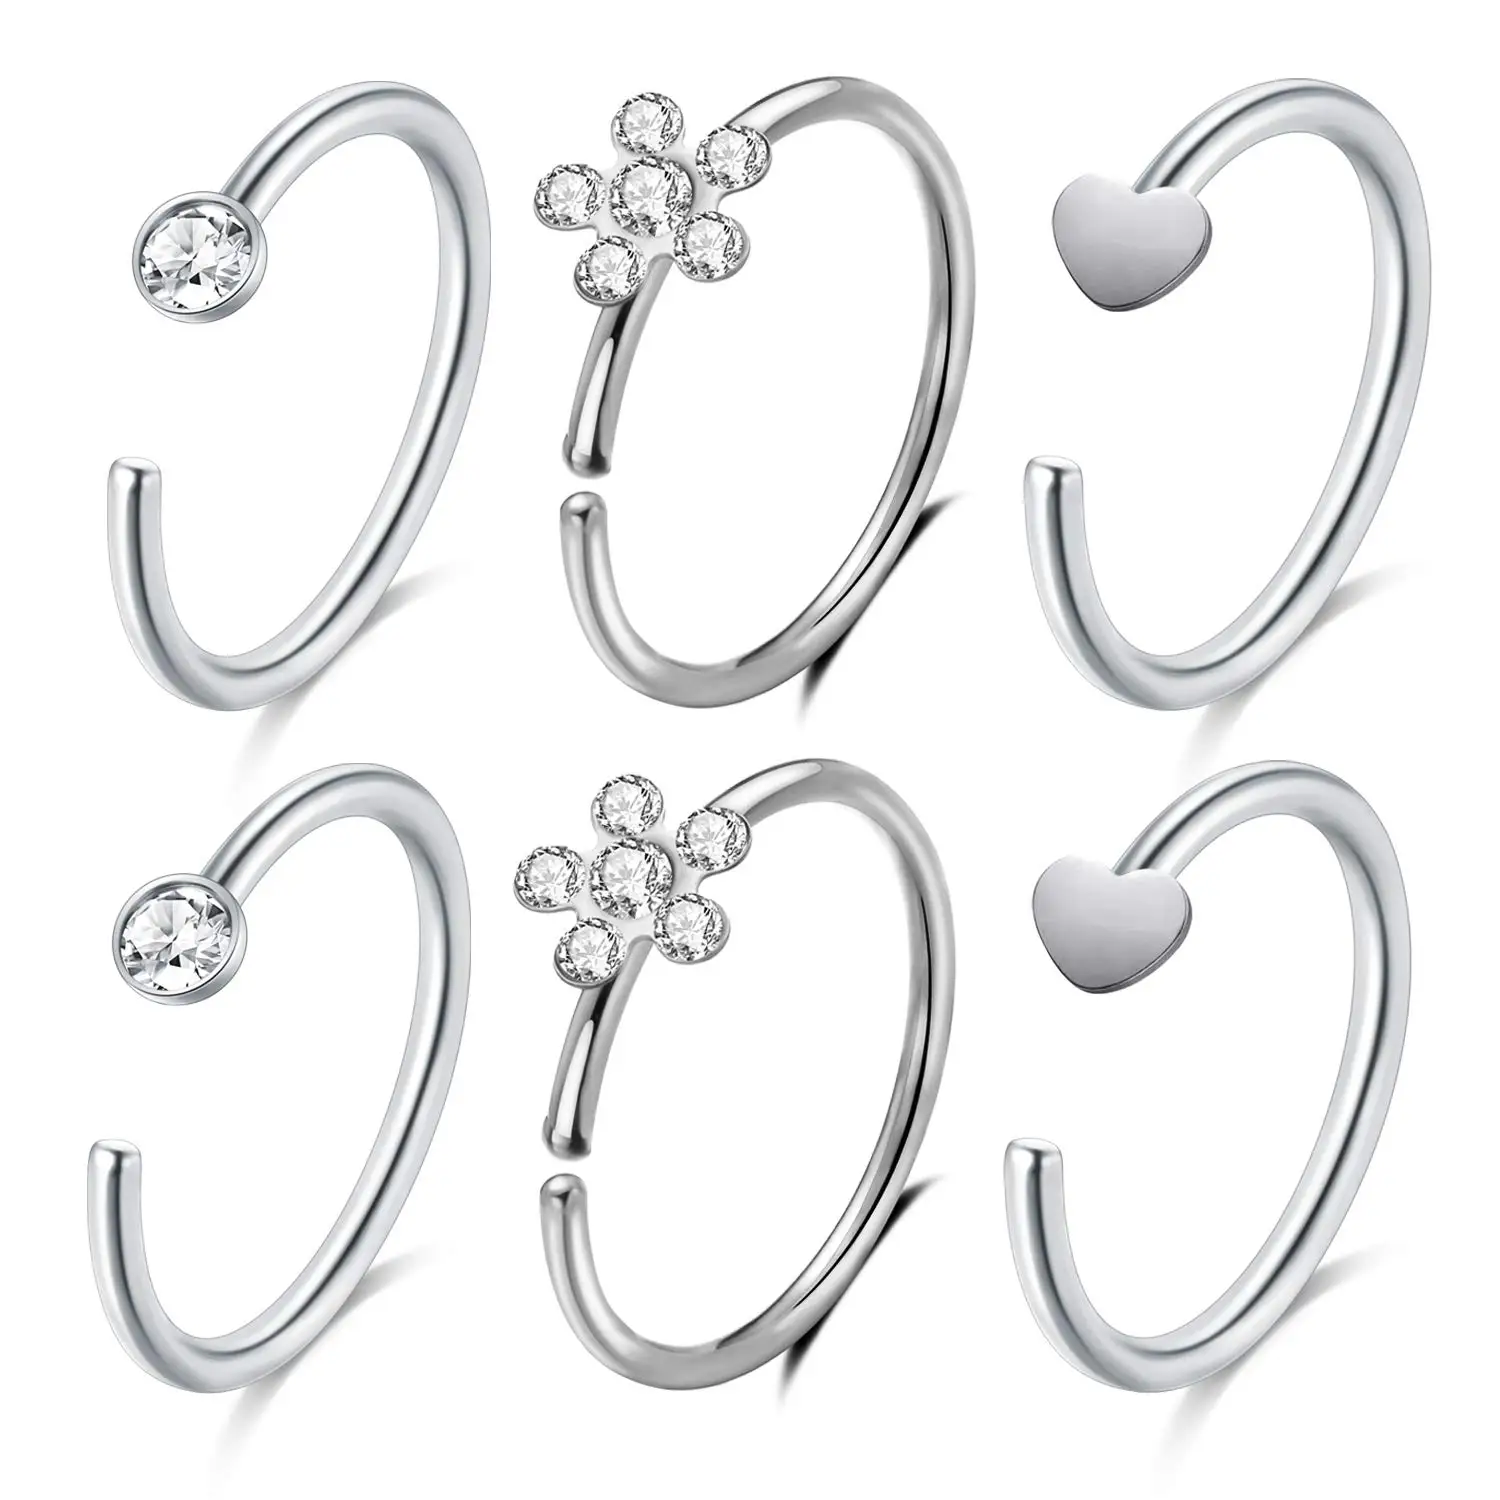 

JFORYOU Nose Rings Hoop Cartilage Hoop Helix Earrings Stainless Steel Heart CZ Flower Top Ear Tragus Piercing 20G